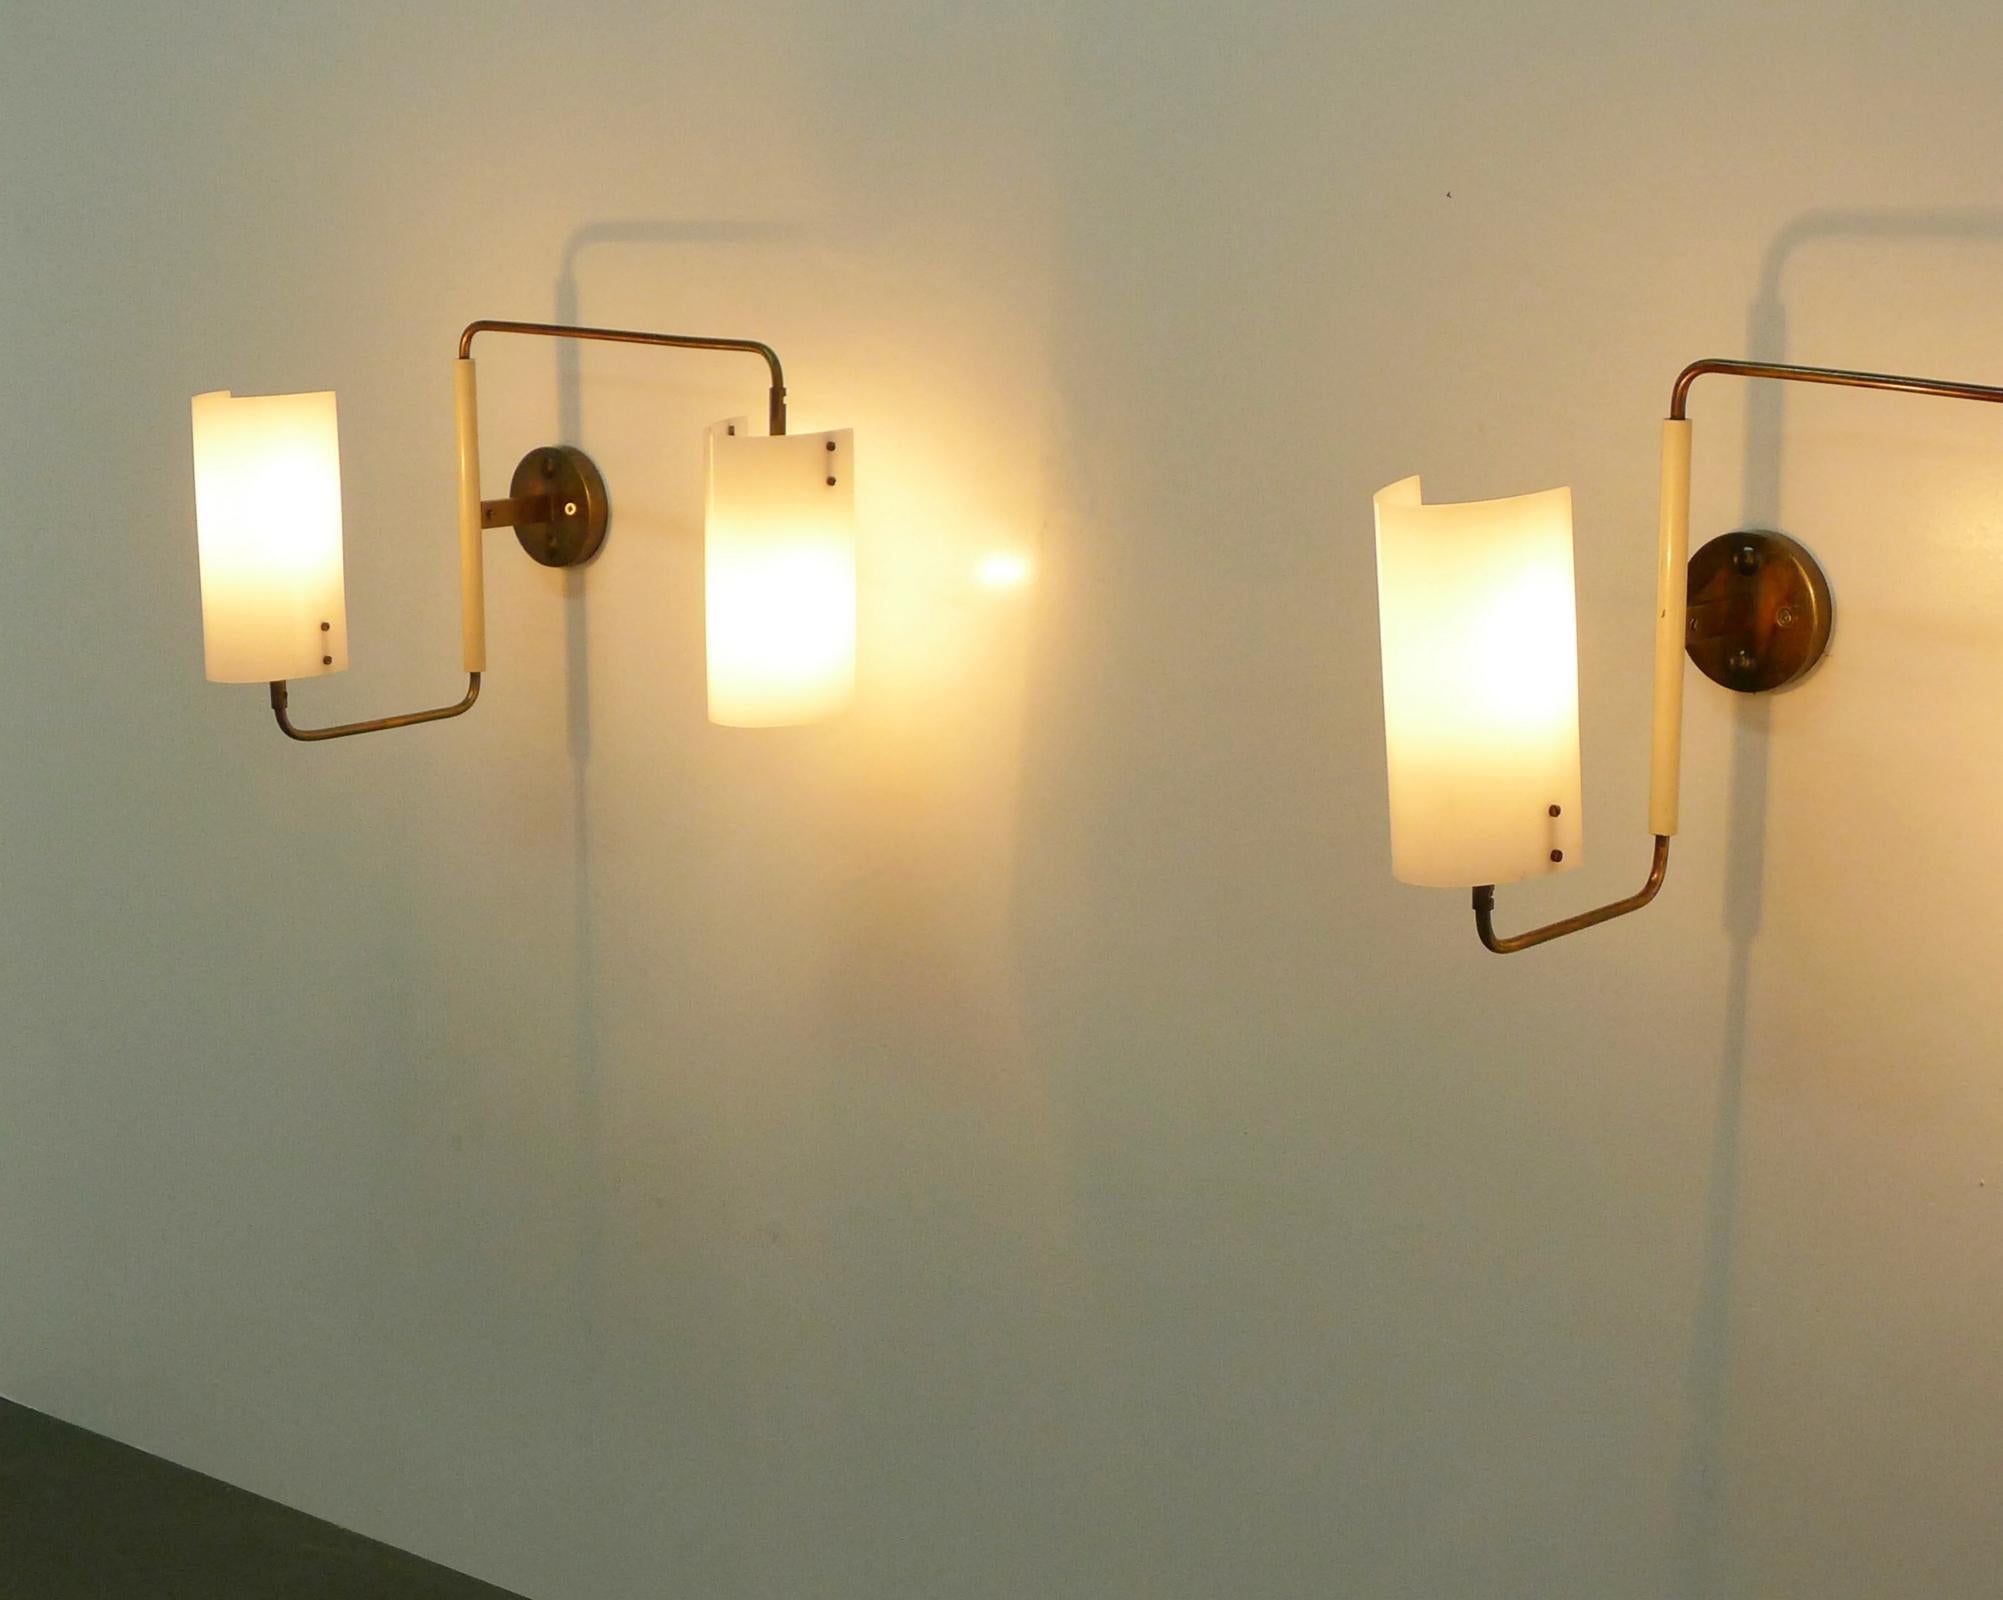 Rare paire d'appliques réglables à deux lumières, conçues en 1955 par Tito Agnoli et fabriquées dans les années 1950 par Oluce.

Les abat-jours en plexiglas blanc opale peuvent être légèrement tournés pour ajuster l'éclairage selon les besoins et